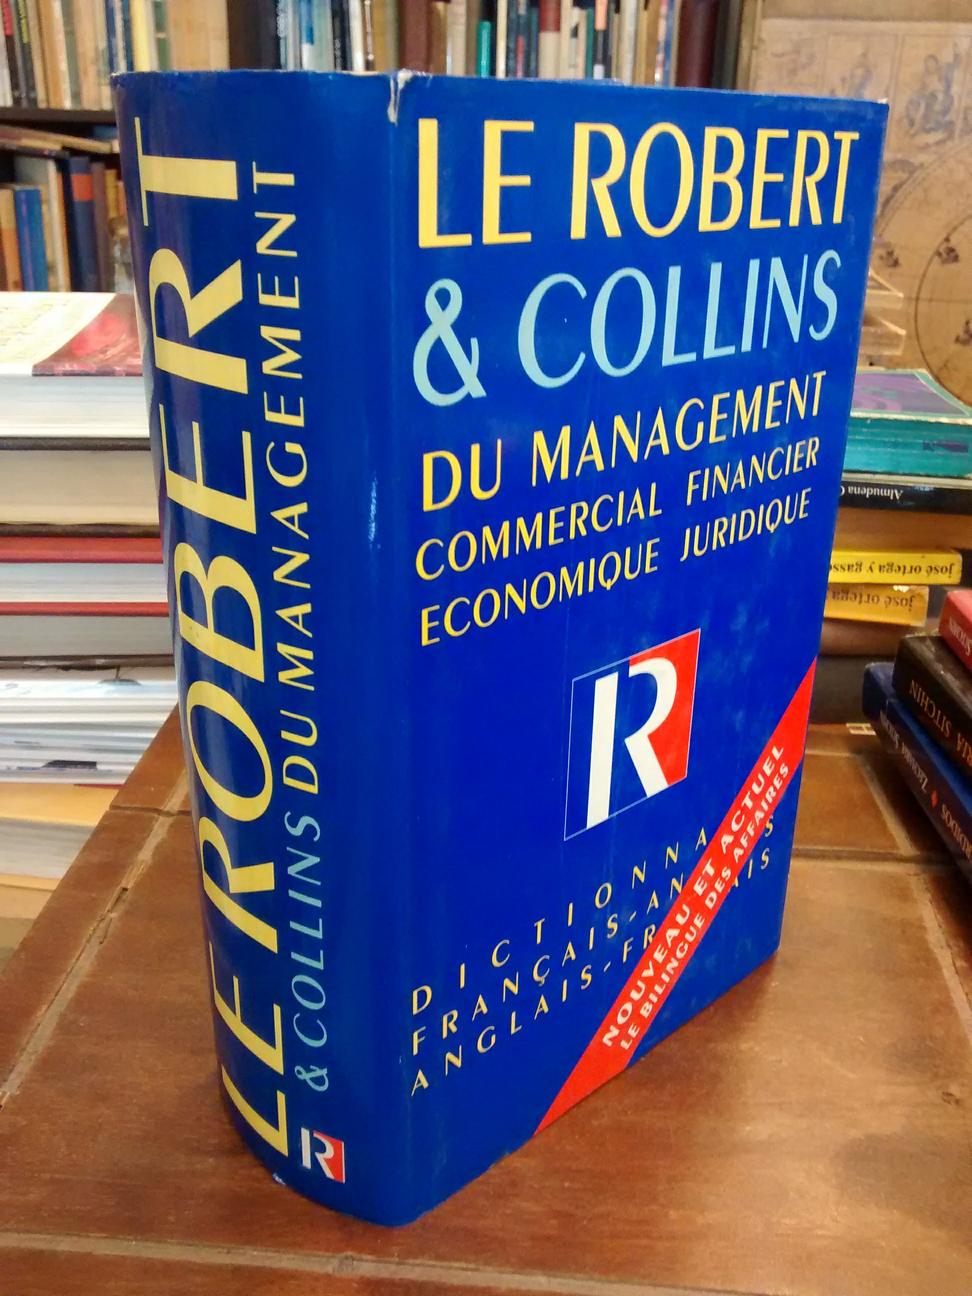 Le Robert & Collins du Management. Dictionnaire français-anglais,... - 